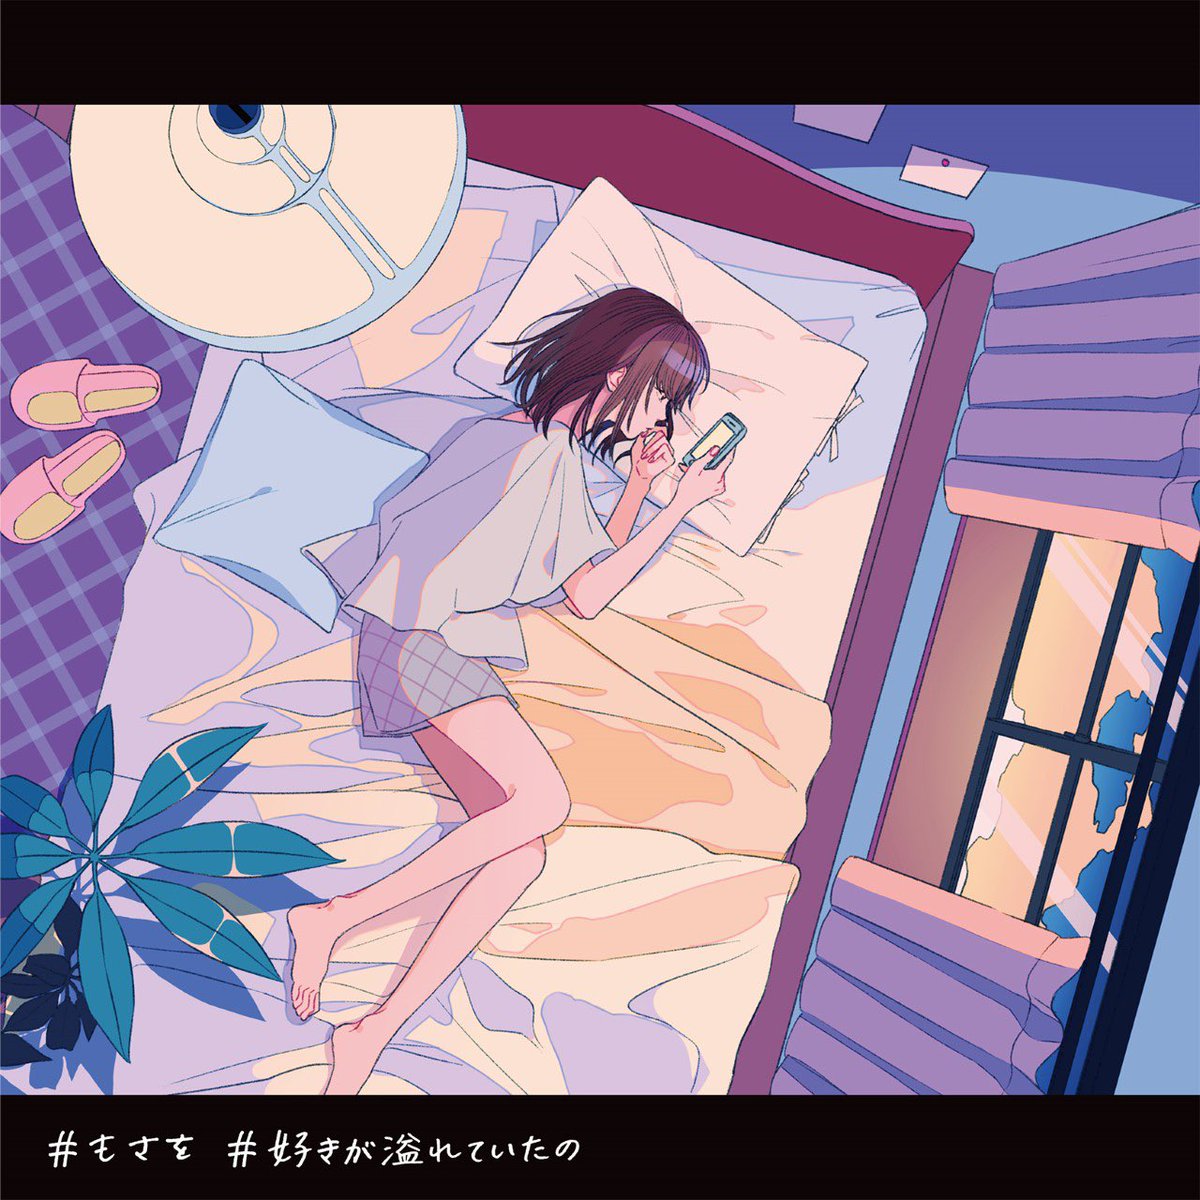 Cover art for『Mosawo - Suki ga Afureteita no』from the release『Suki ga Afureteita no』